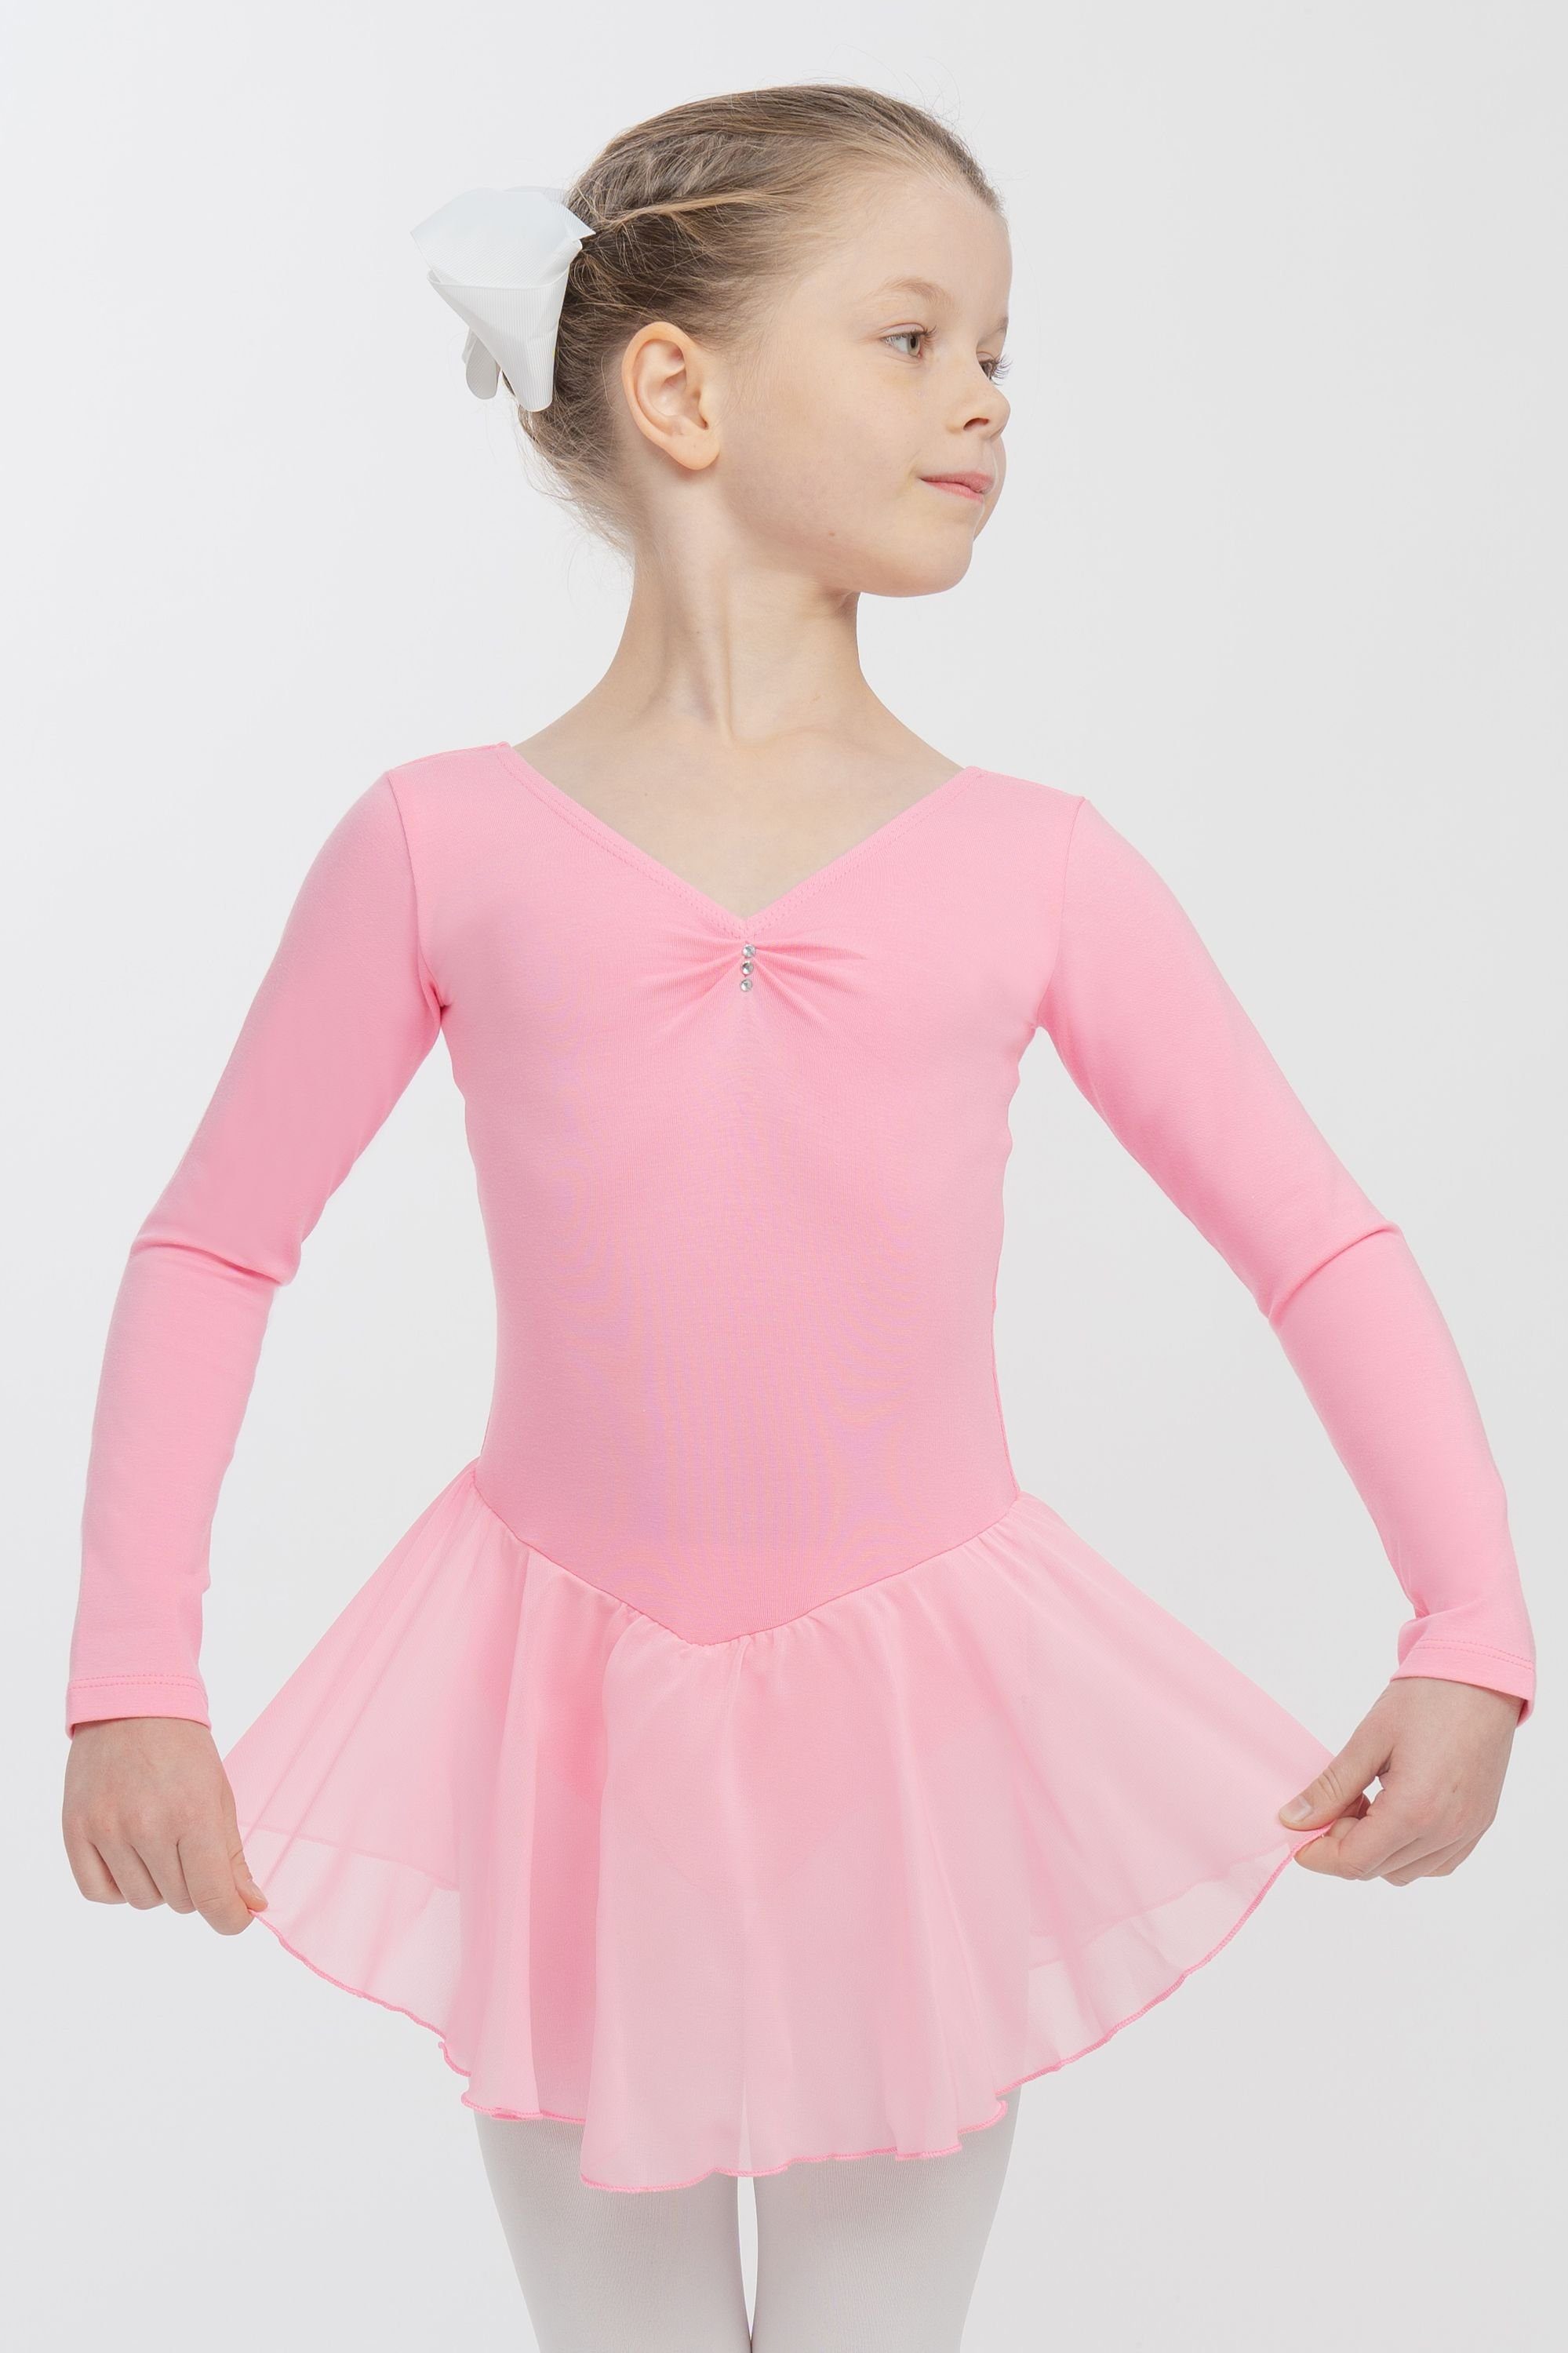 tanzmuster Chiffonkleid Ballettkleid Anna mit Glitzersteinen Mädchen Ballettbody mit Chiffon Röckchen rosa